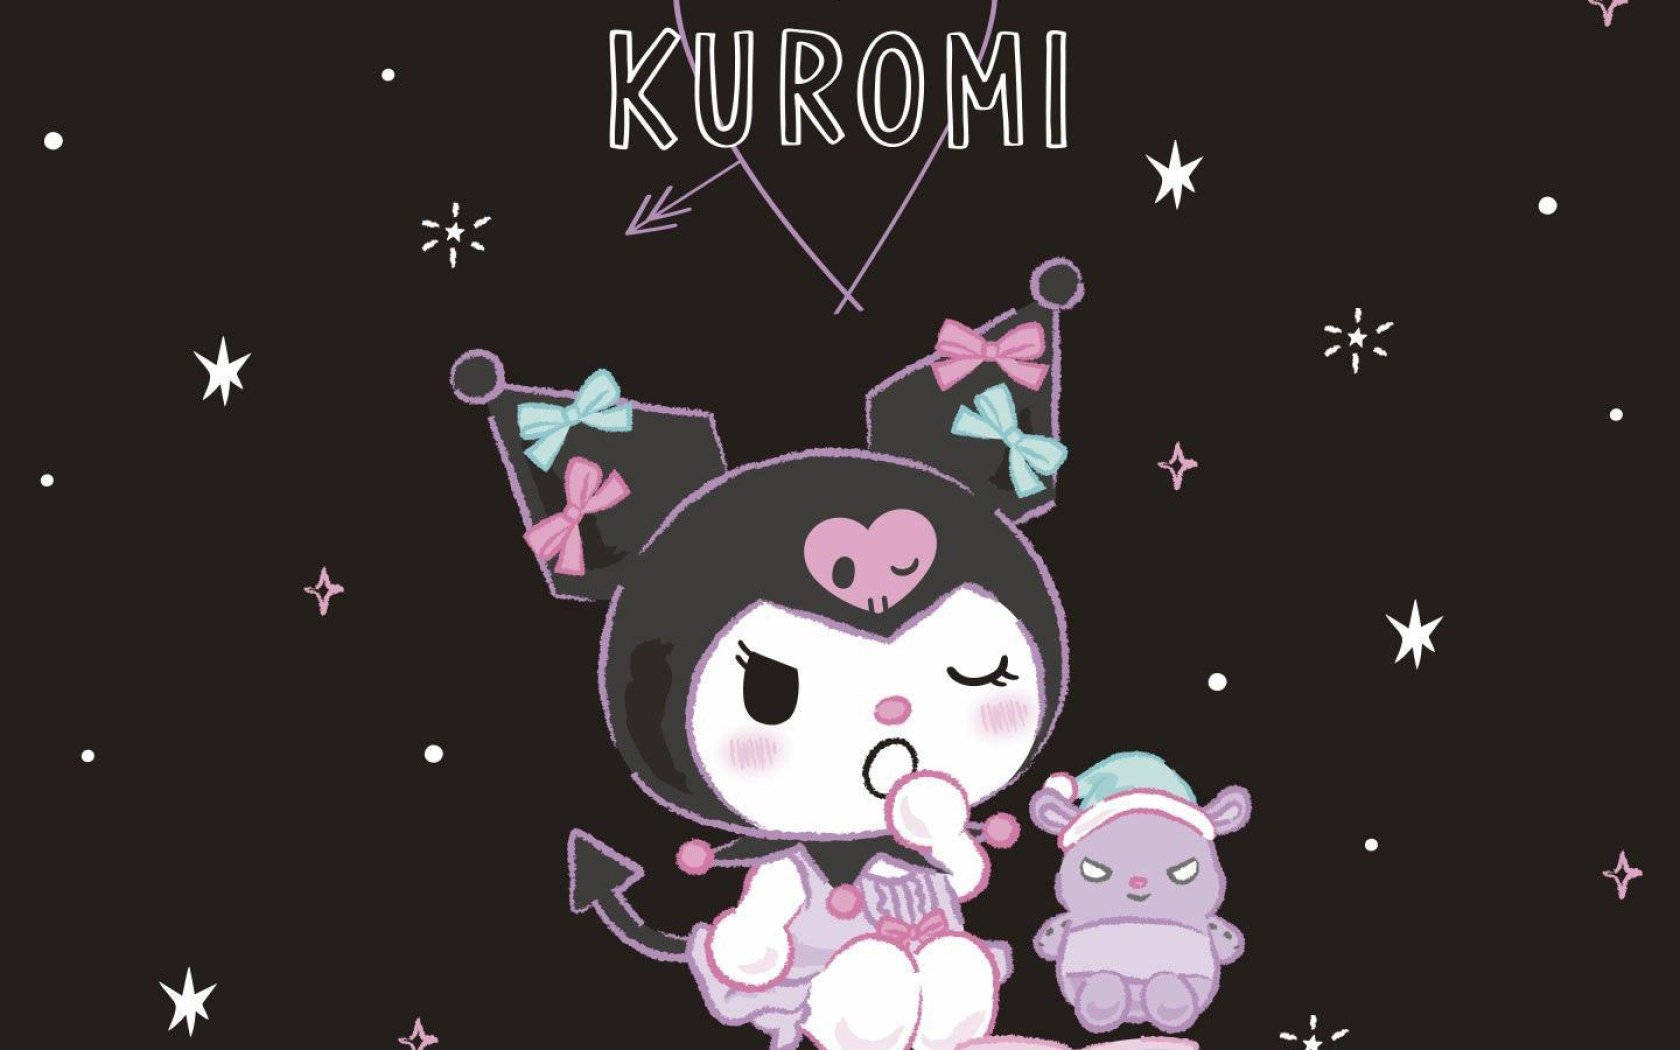 Kuromi wallpaper for your phone! - Kuromi